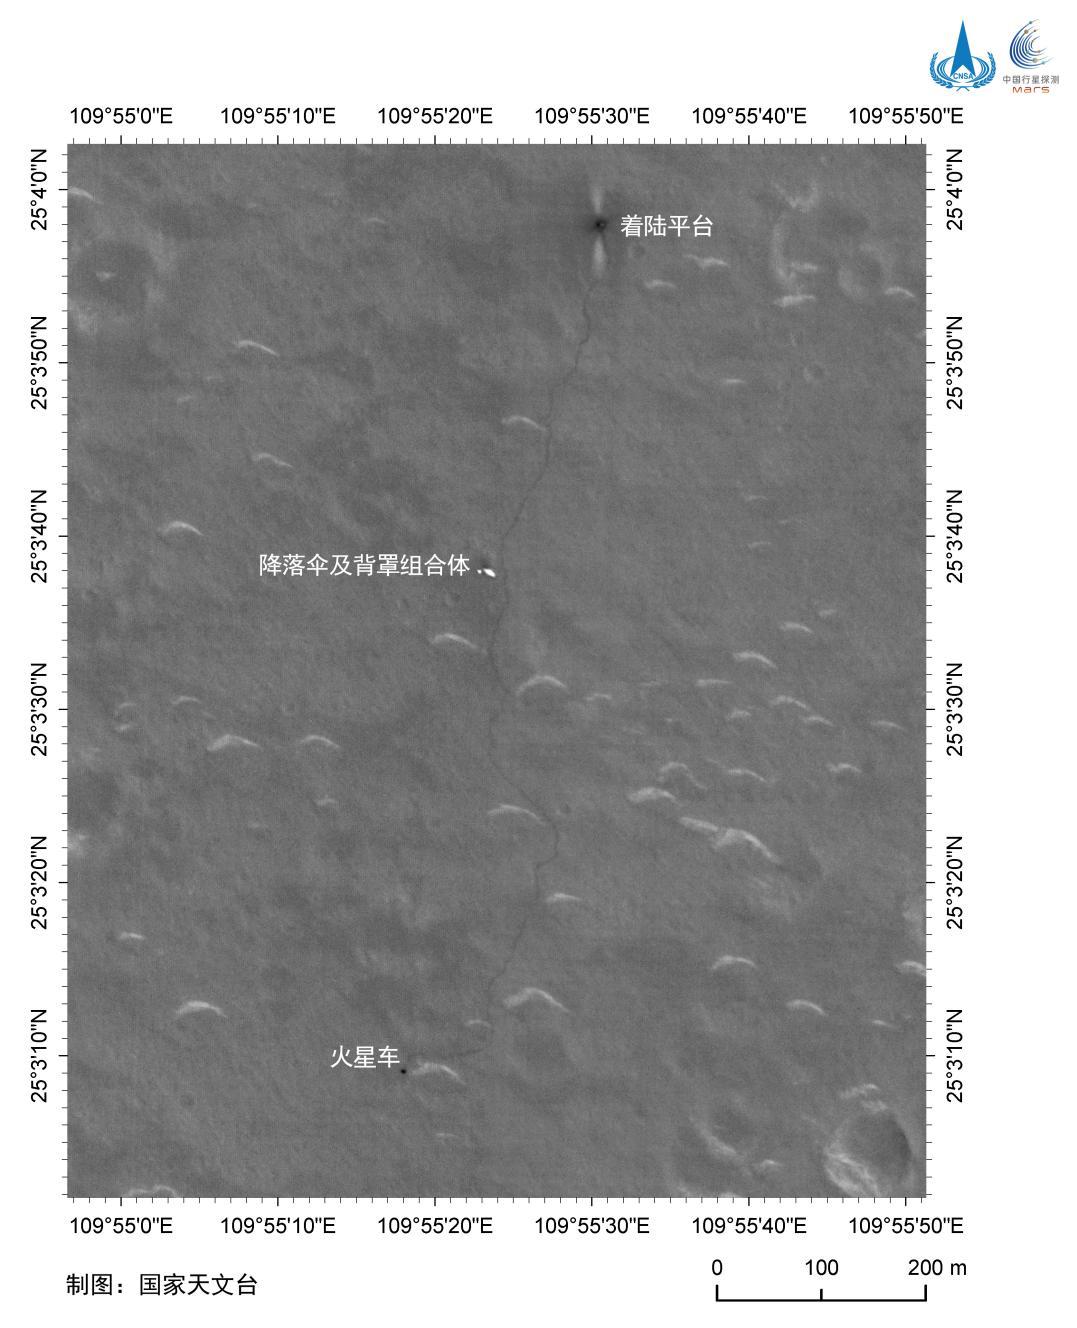 环绕器拍摄火星车行驶轨迹